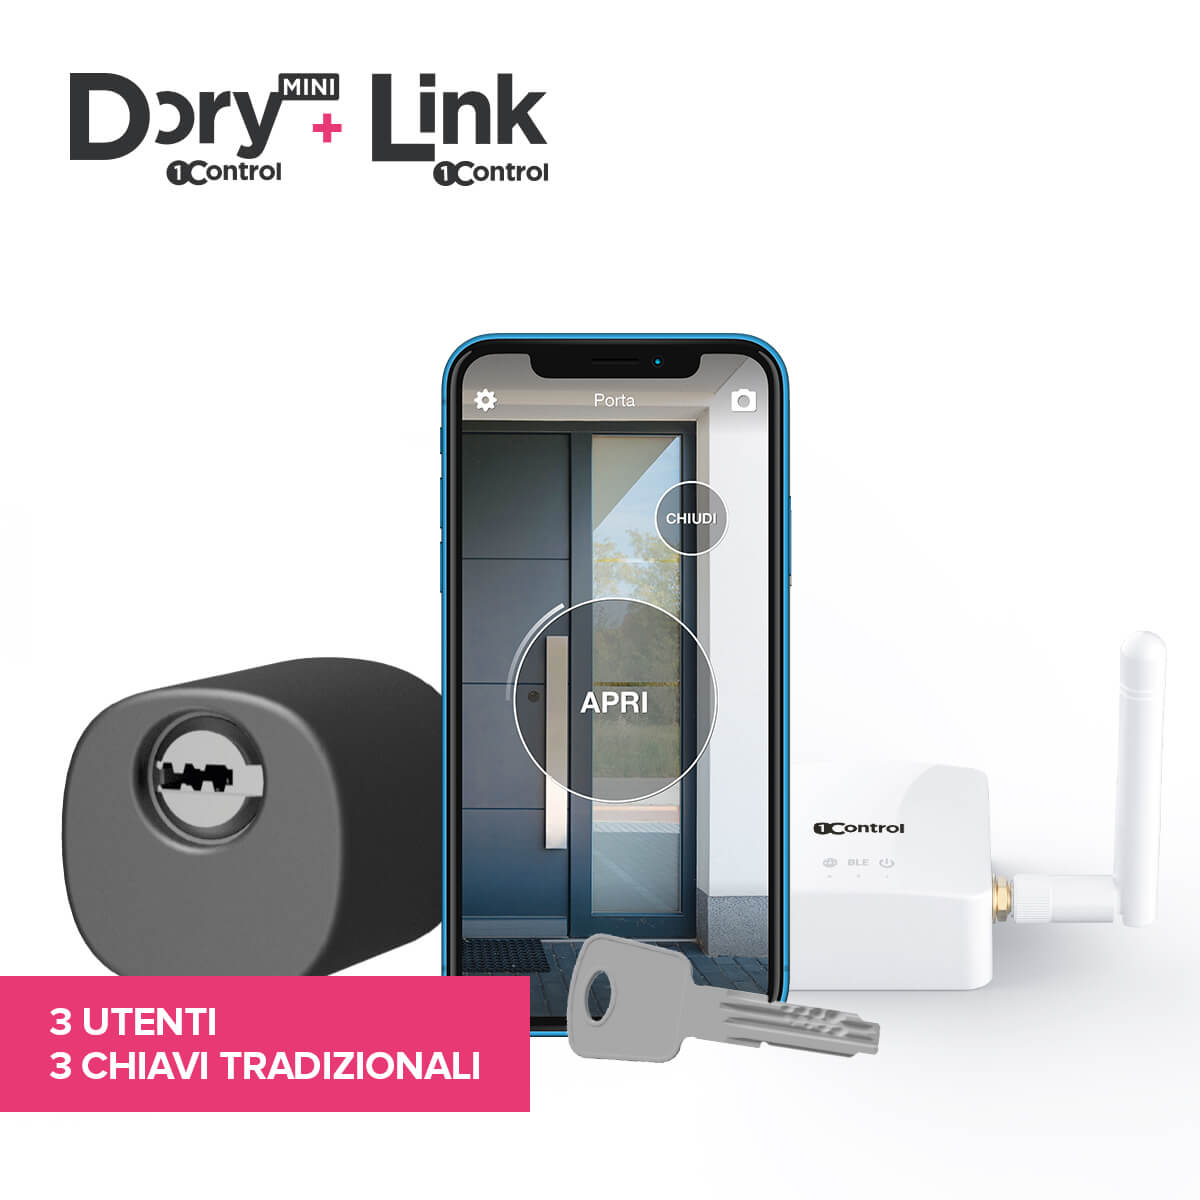 1Control DORY MINI e LINK serratura elettronica smart home per apertura a distanza e con comandi vocali